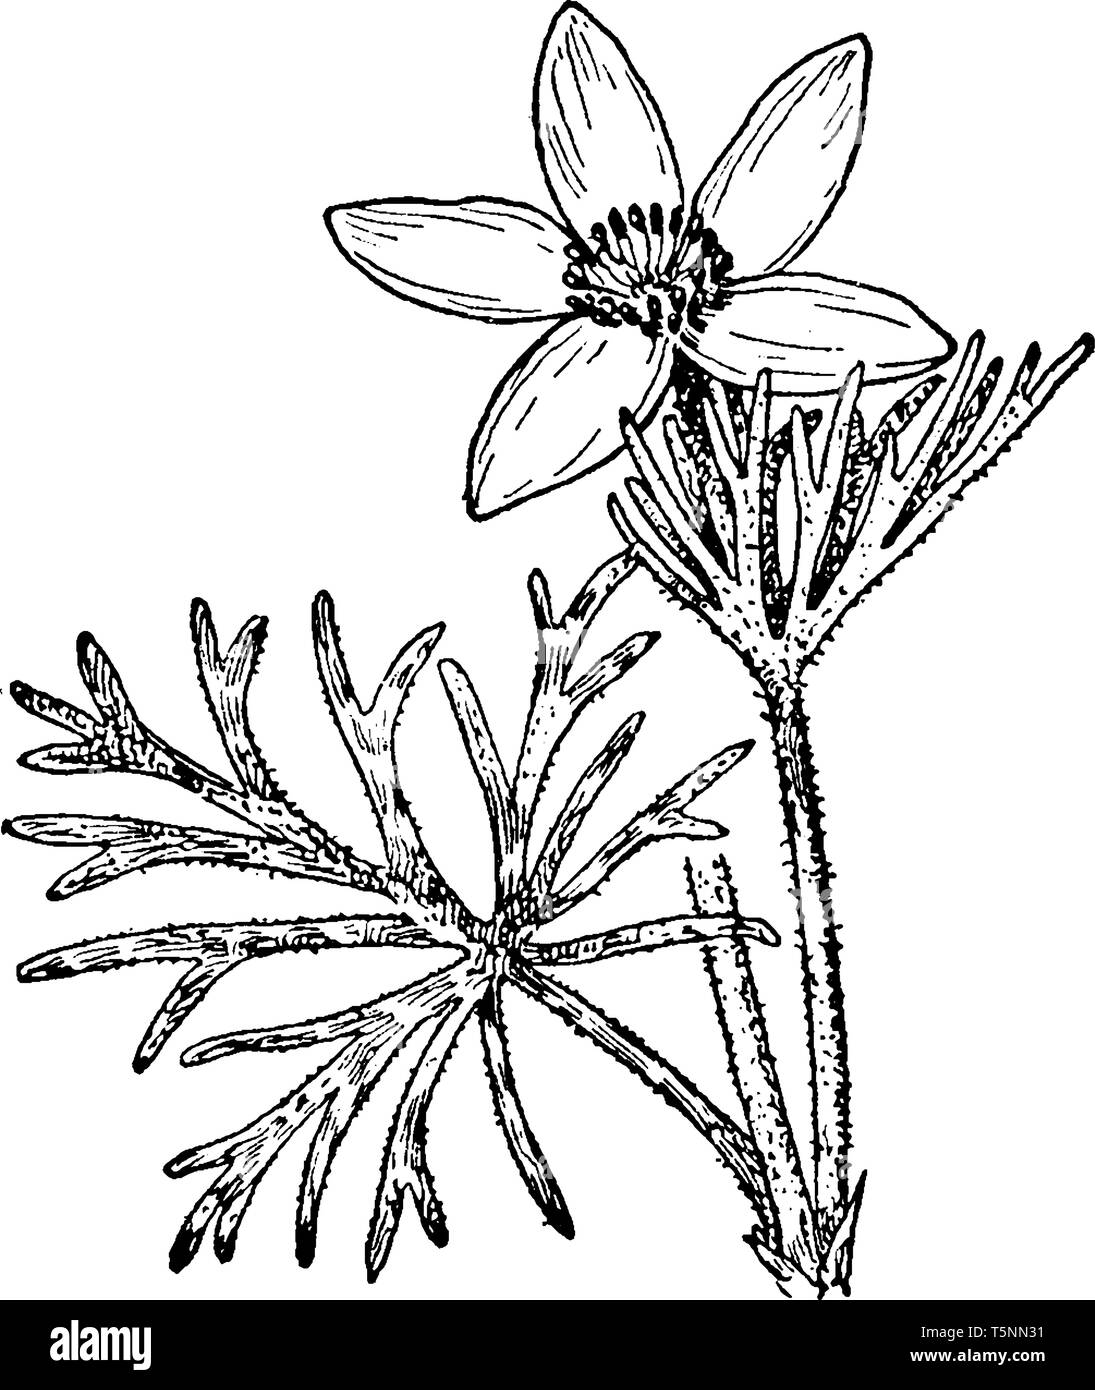 Il genere Pulsatilla contiene circa 33 specie di piante erbacee perenni, nomi comuni è "pasque flower la cui grande fioritura viola con una borchia centrale di Illustrazione Vettoriale